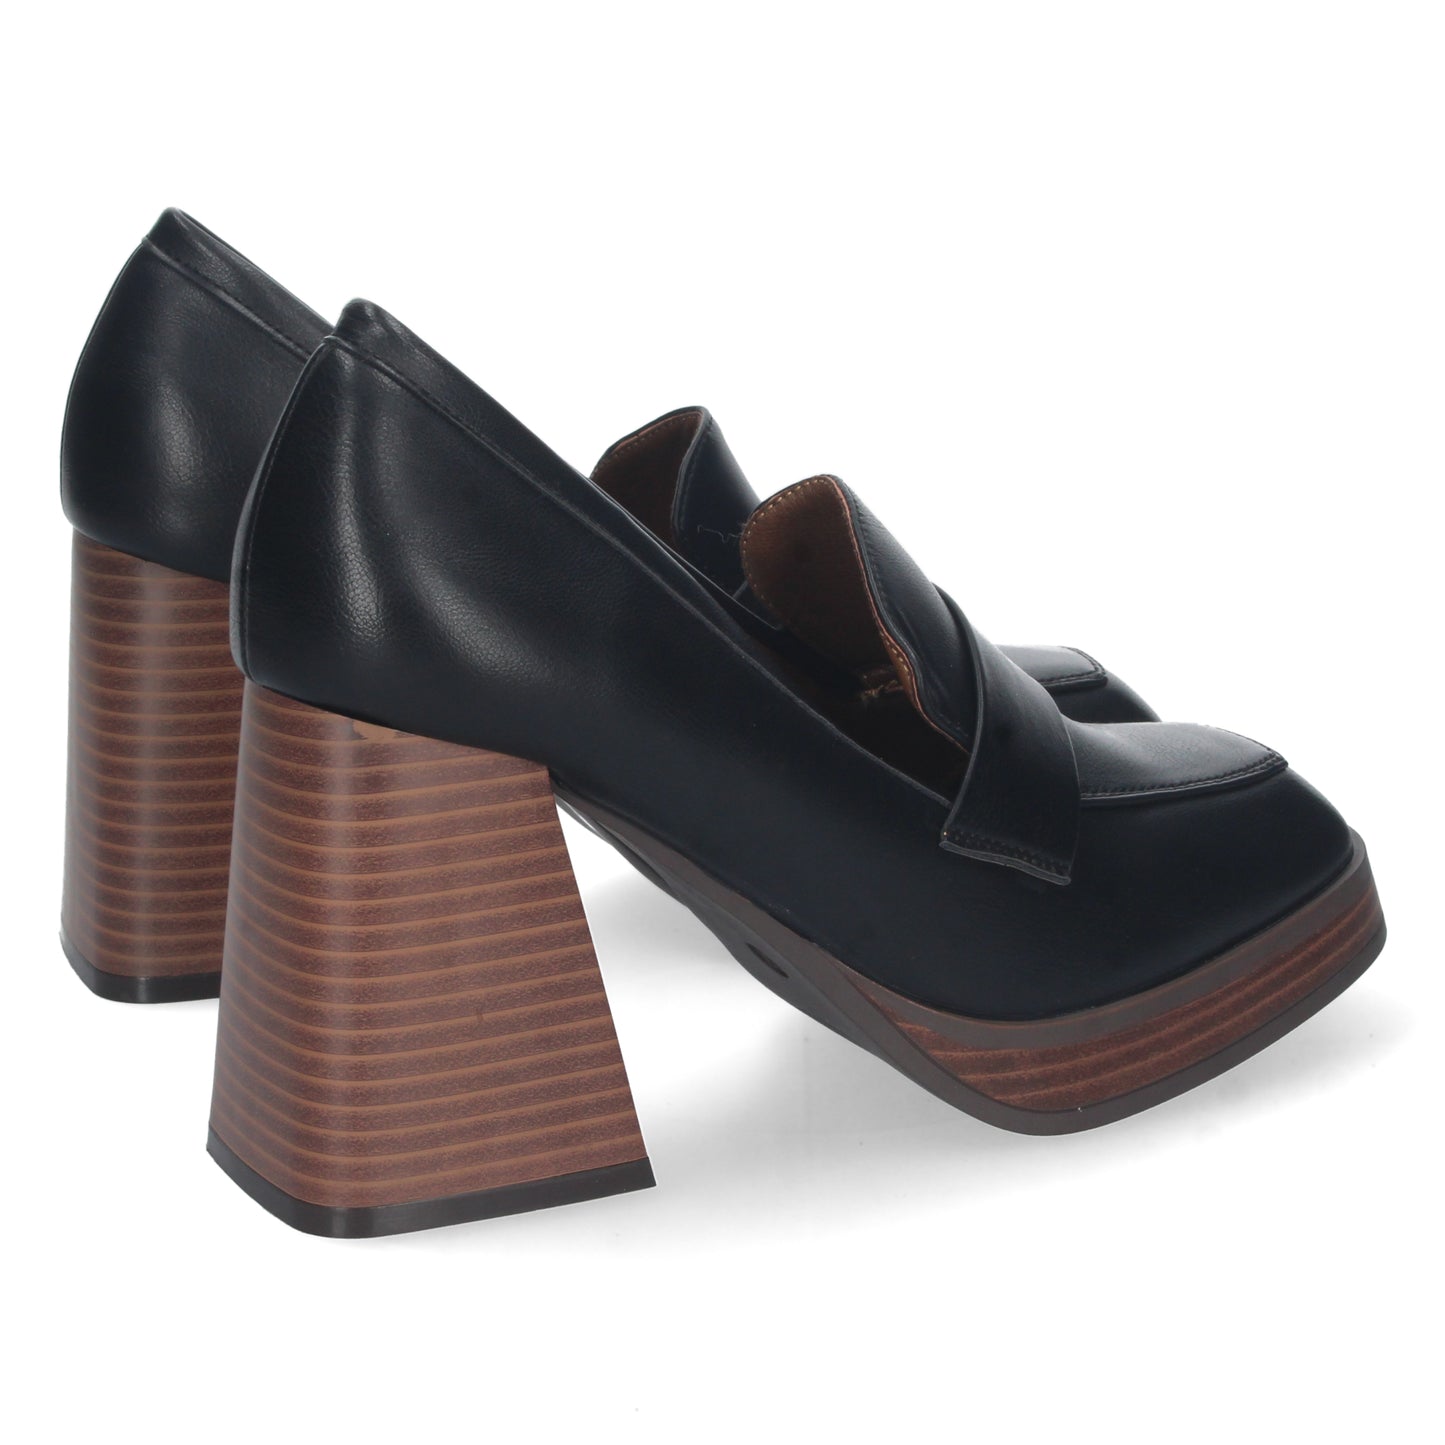 Zapato de Tacon Alto para Mujer  Ancho  Comodo  con Mini Plataforma  Correa en el Empeine  Otoño Invierno *